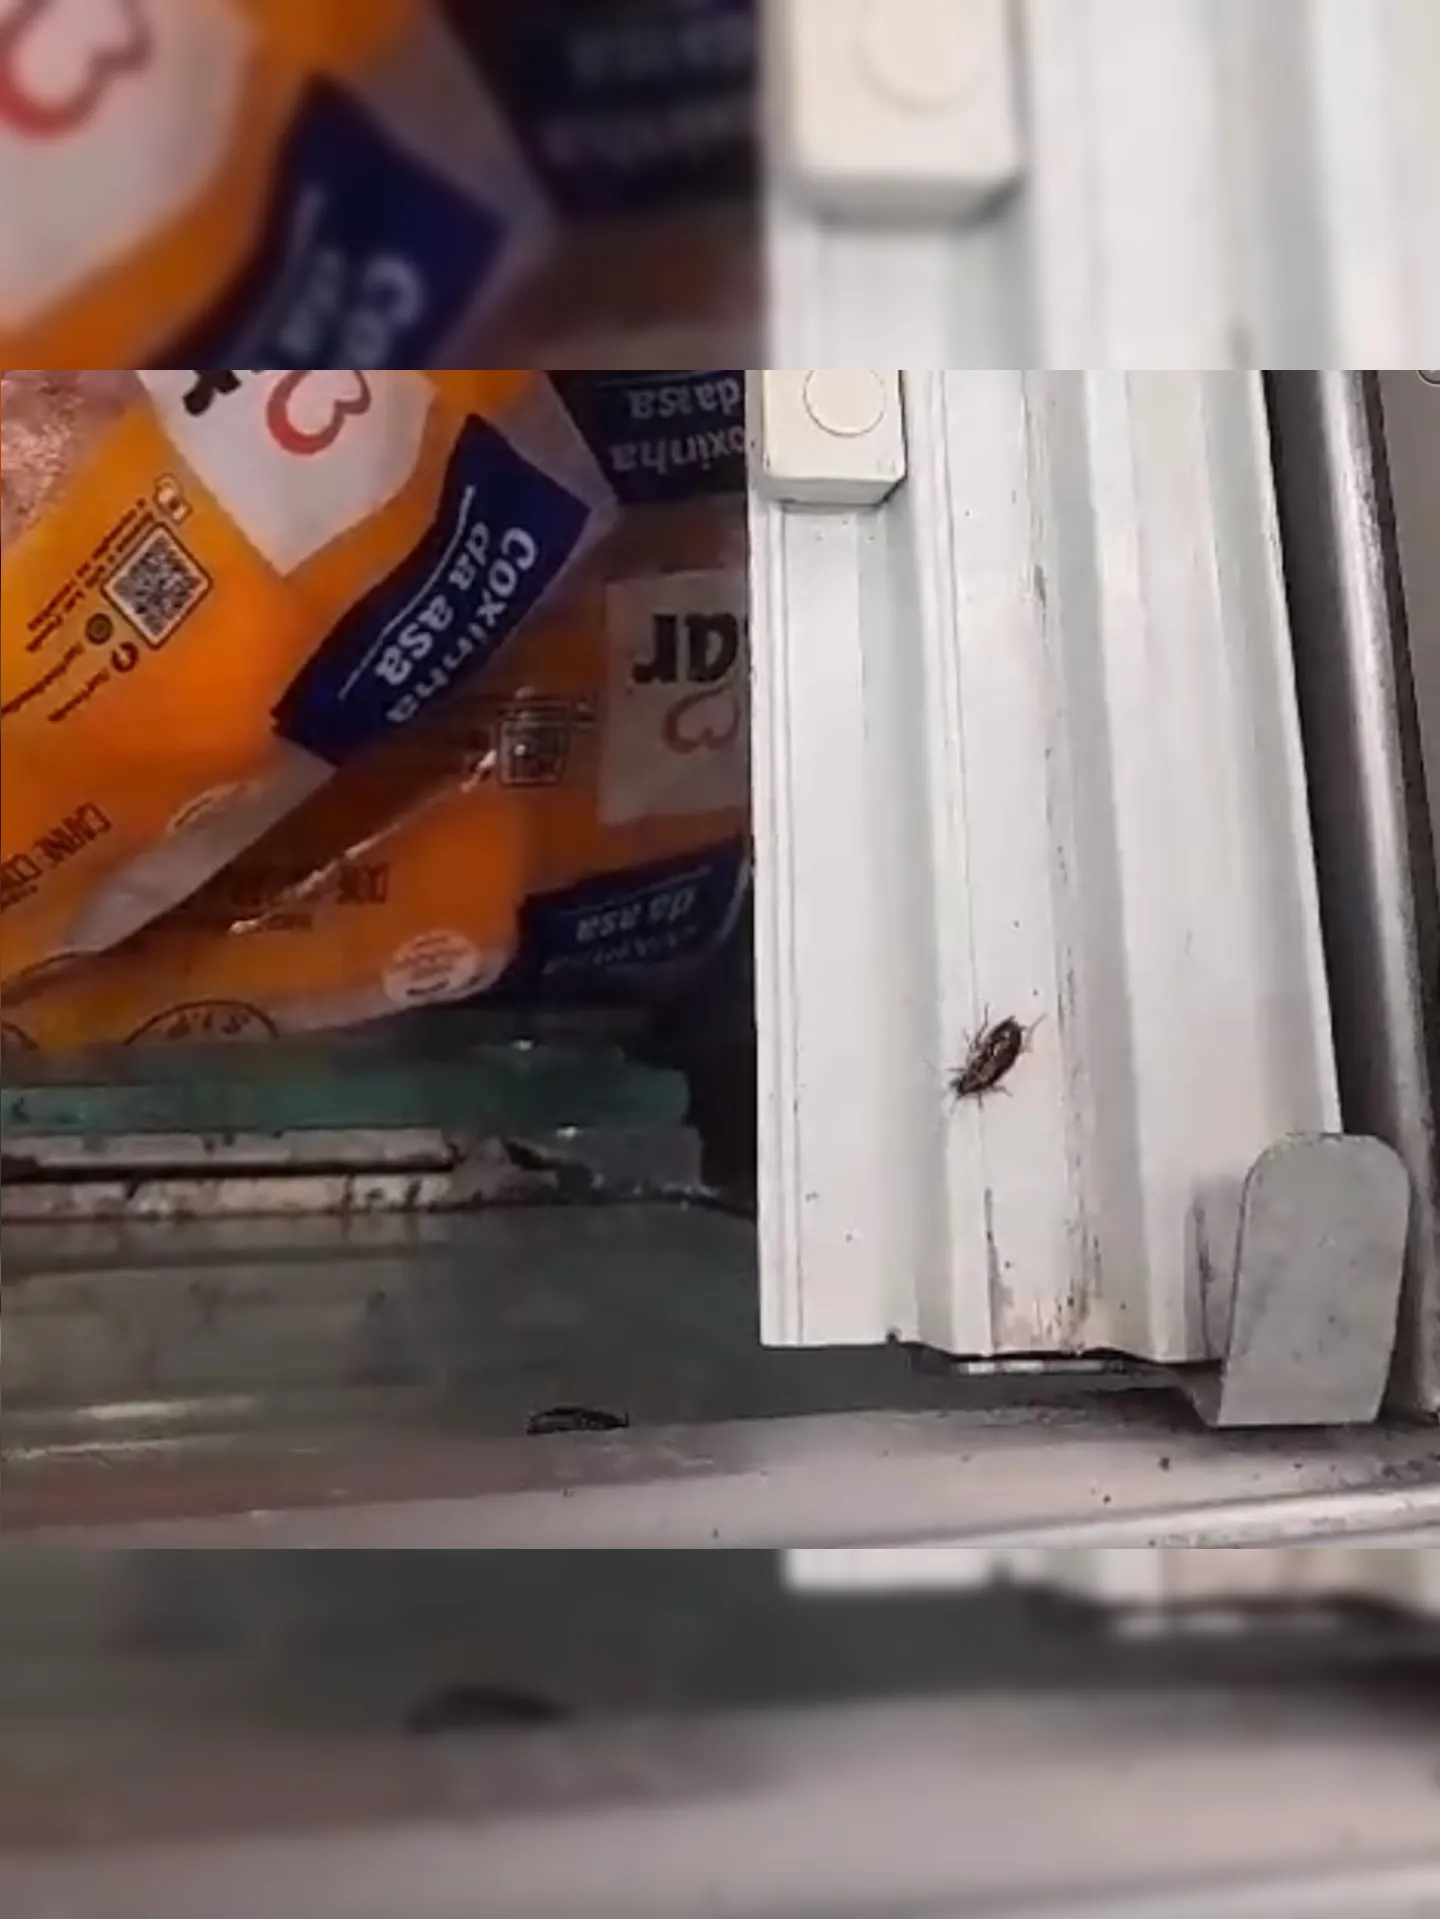 Baratas, ratos e outros insetos já foram encontrados junto da comida, segundo clientes